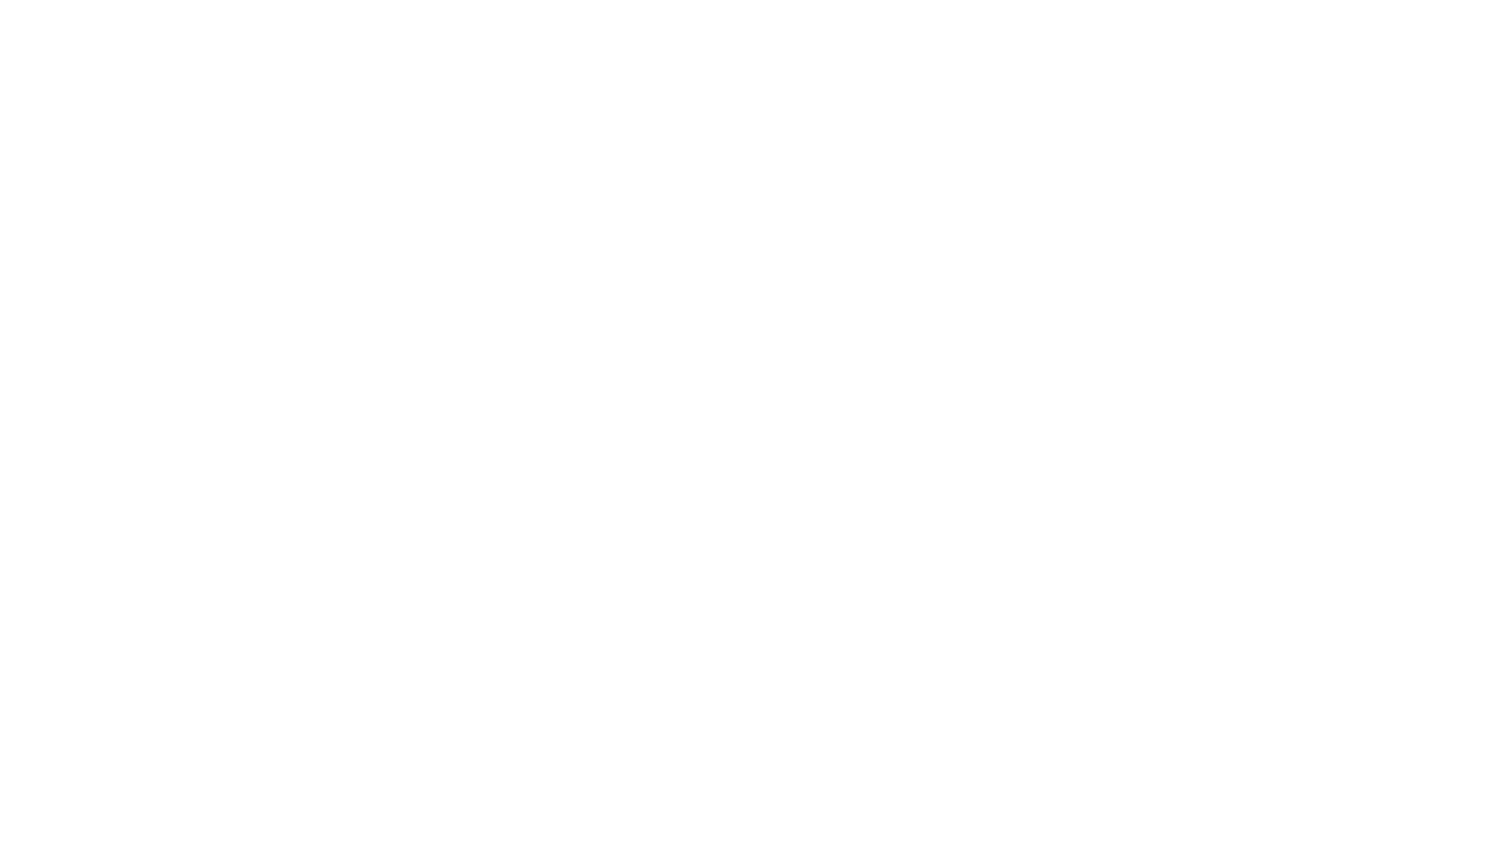 PeakXP